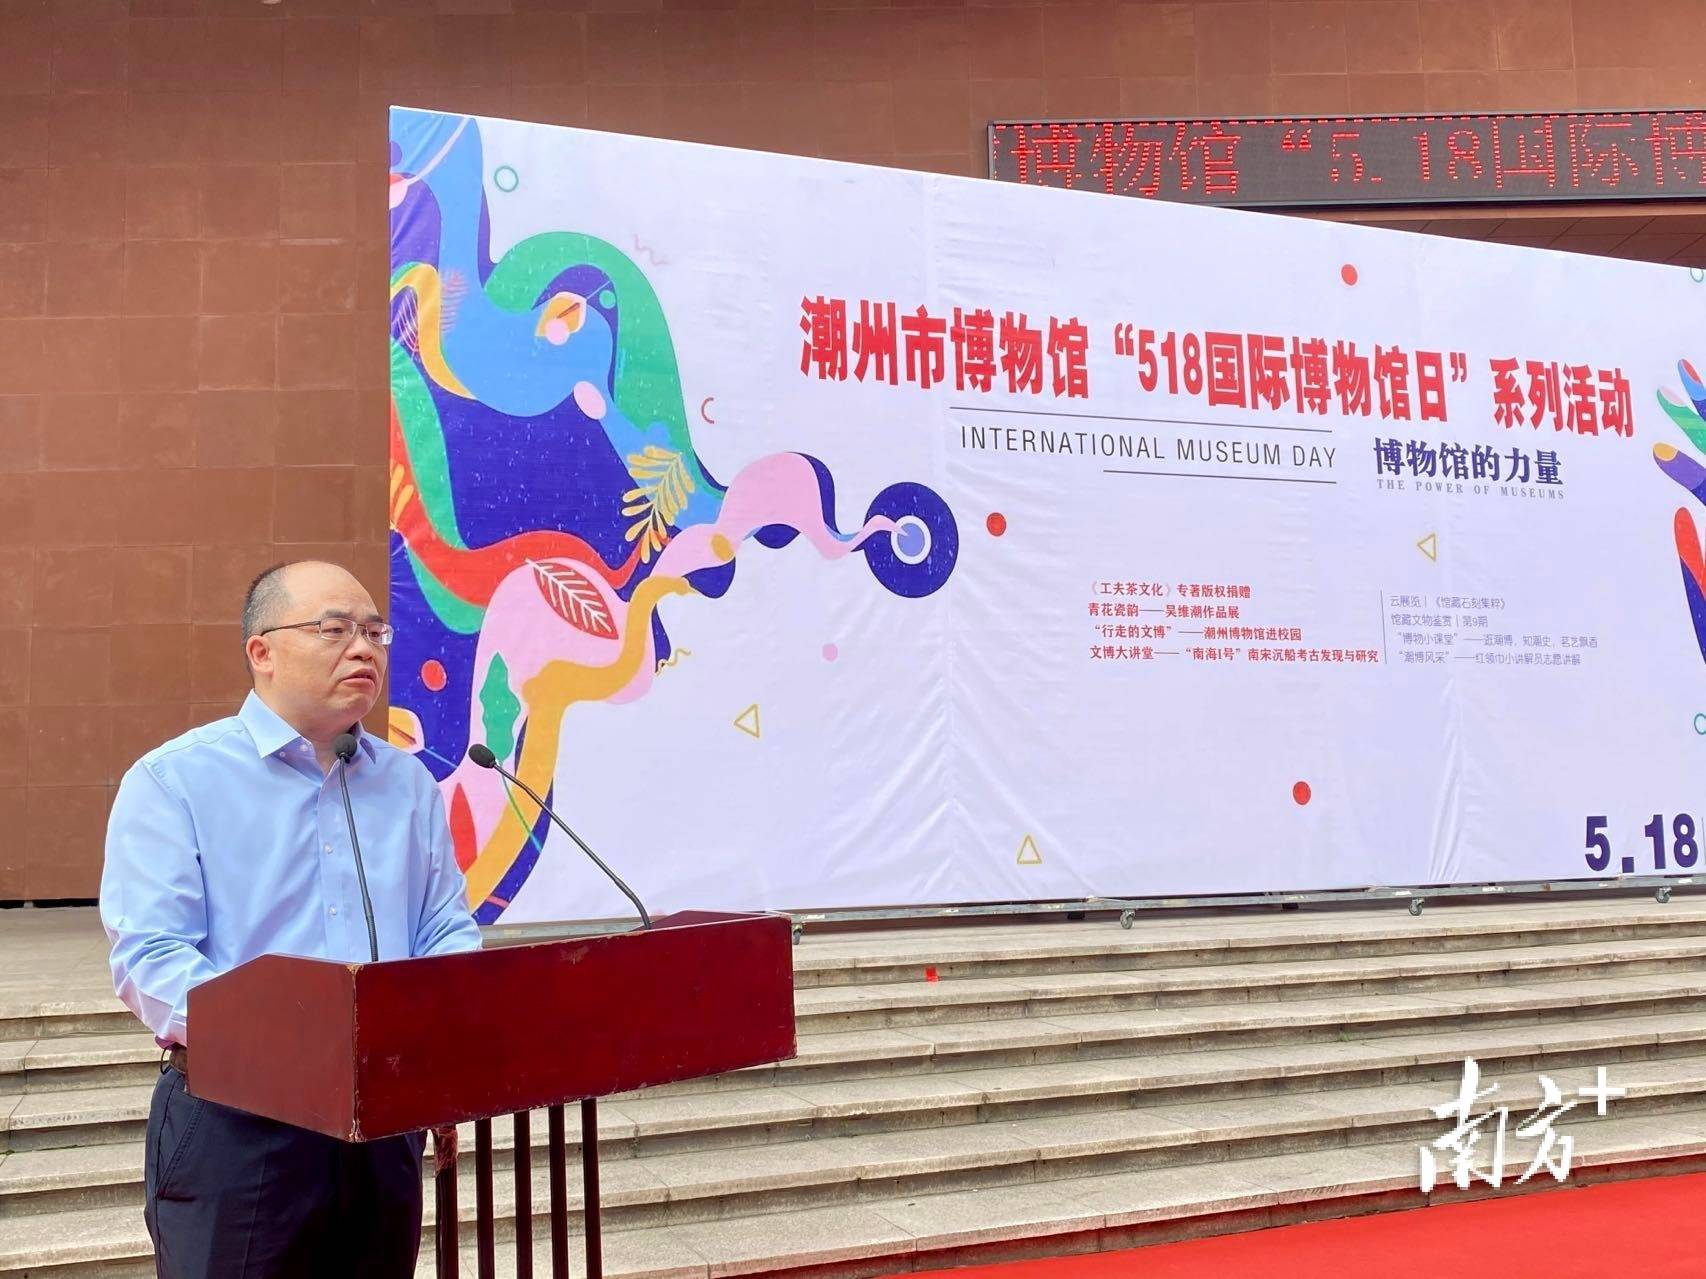 18国际博物馆日系列活动,潮州市委常委,宣传部部长刘星出席启动仪式